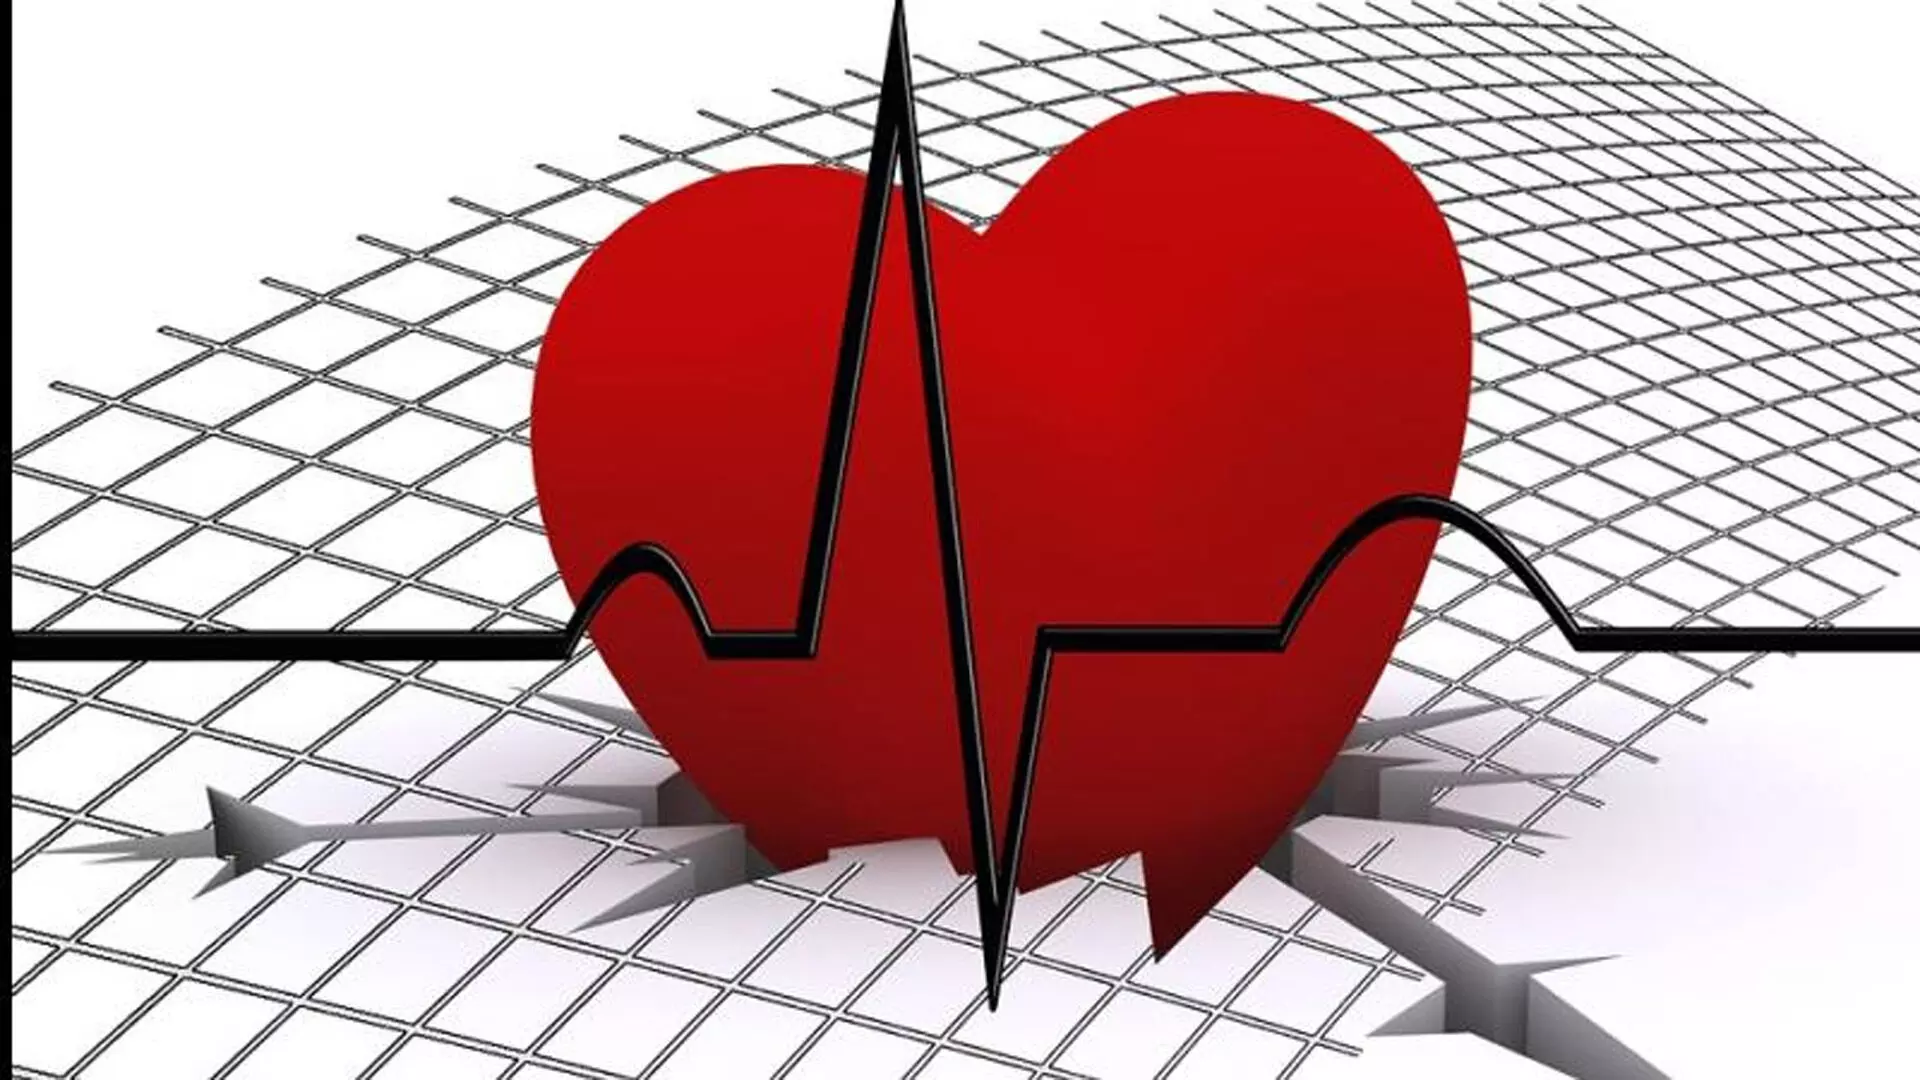 अस्पताल हृदय और रीढ़ की हड्डी के स्वास्थ्य को संतुलित करेगा